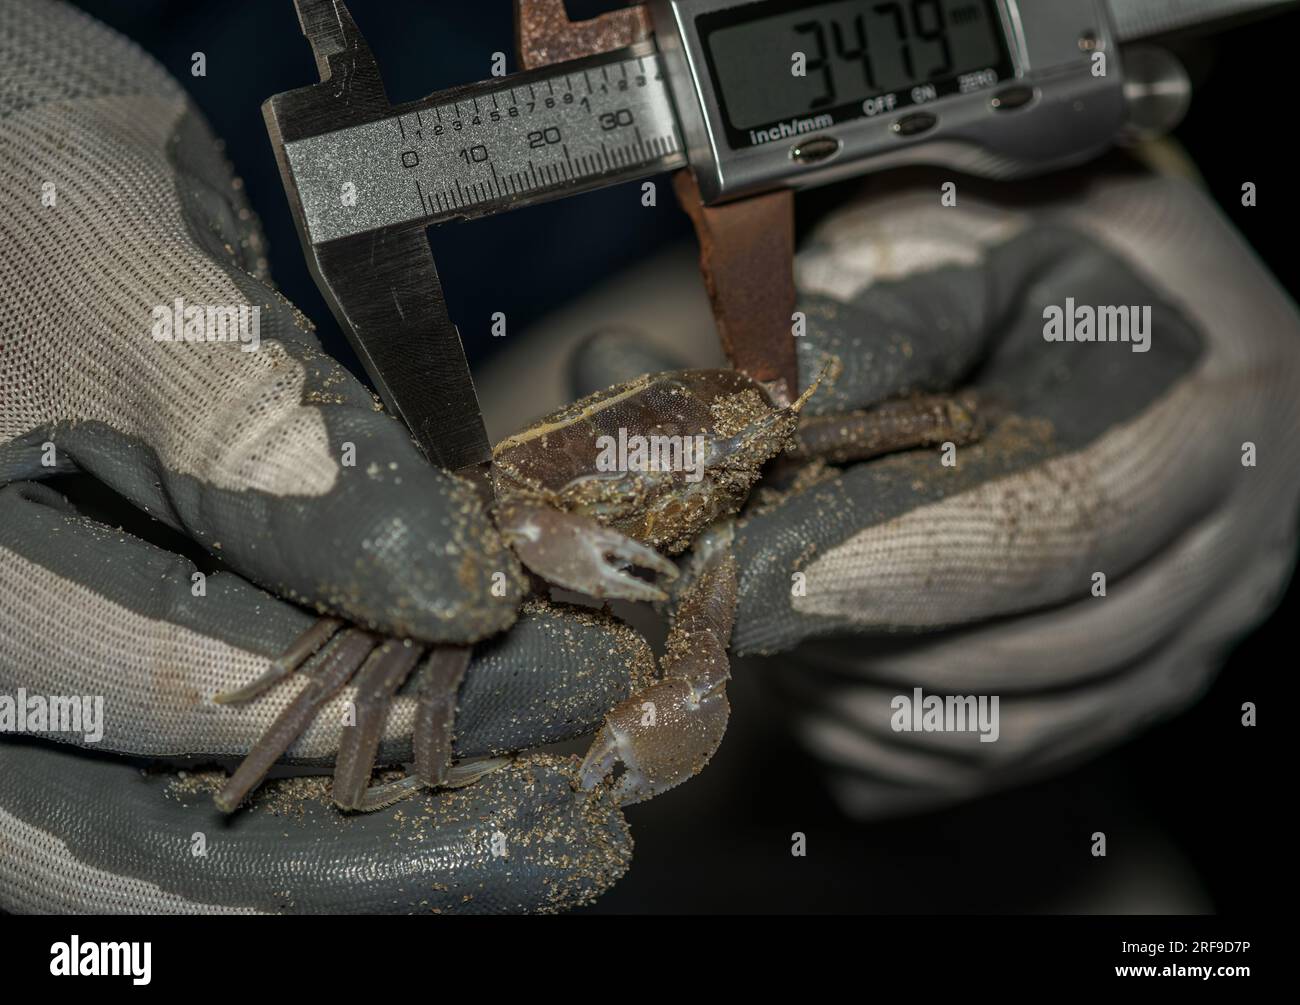 Capture et mesure d'un crabe fantôme touffeté dans un suivi de la taille d'une population sur une plage de l'est de la Sicile Banque D'Images